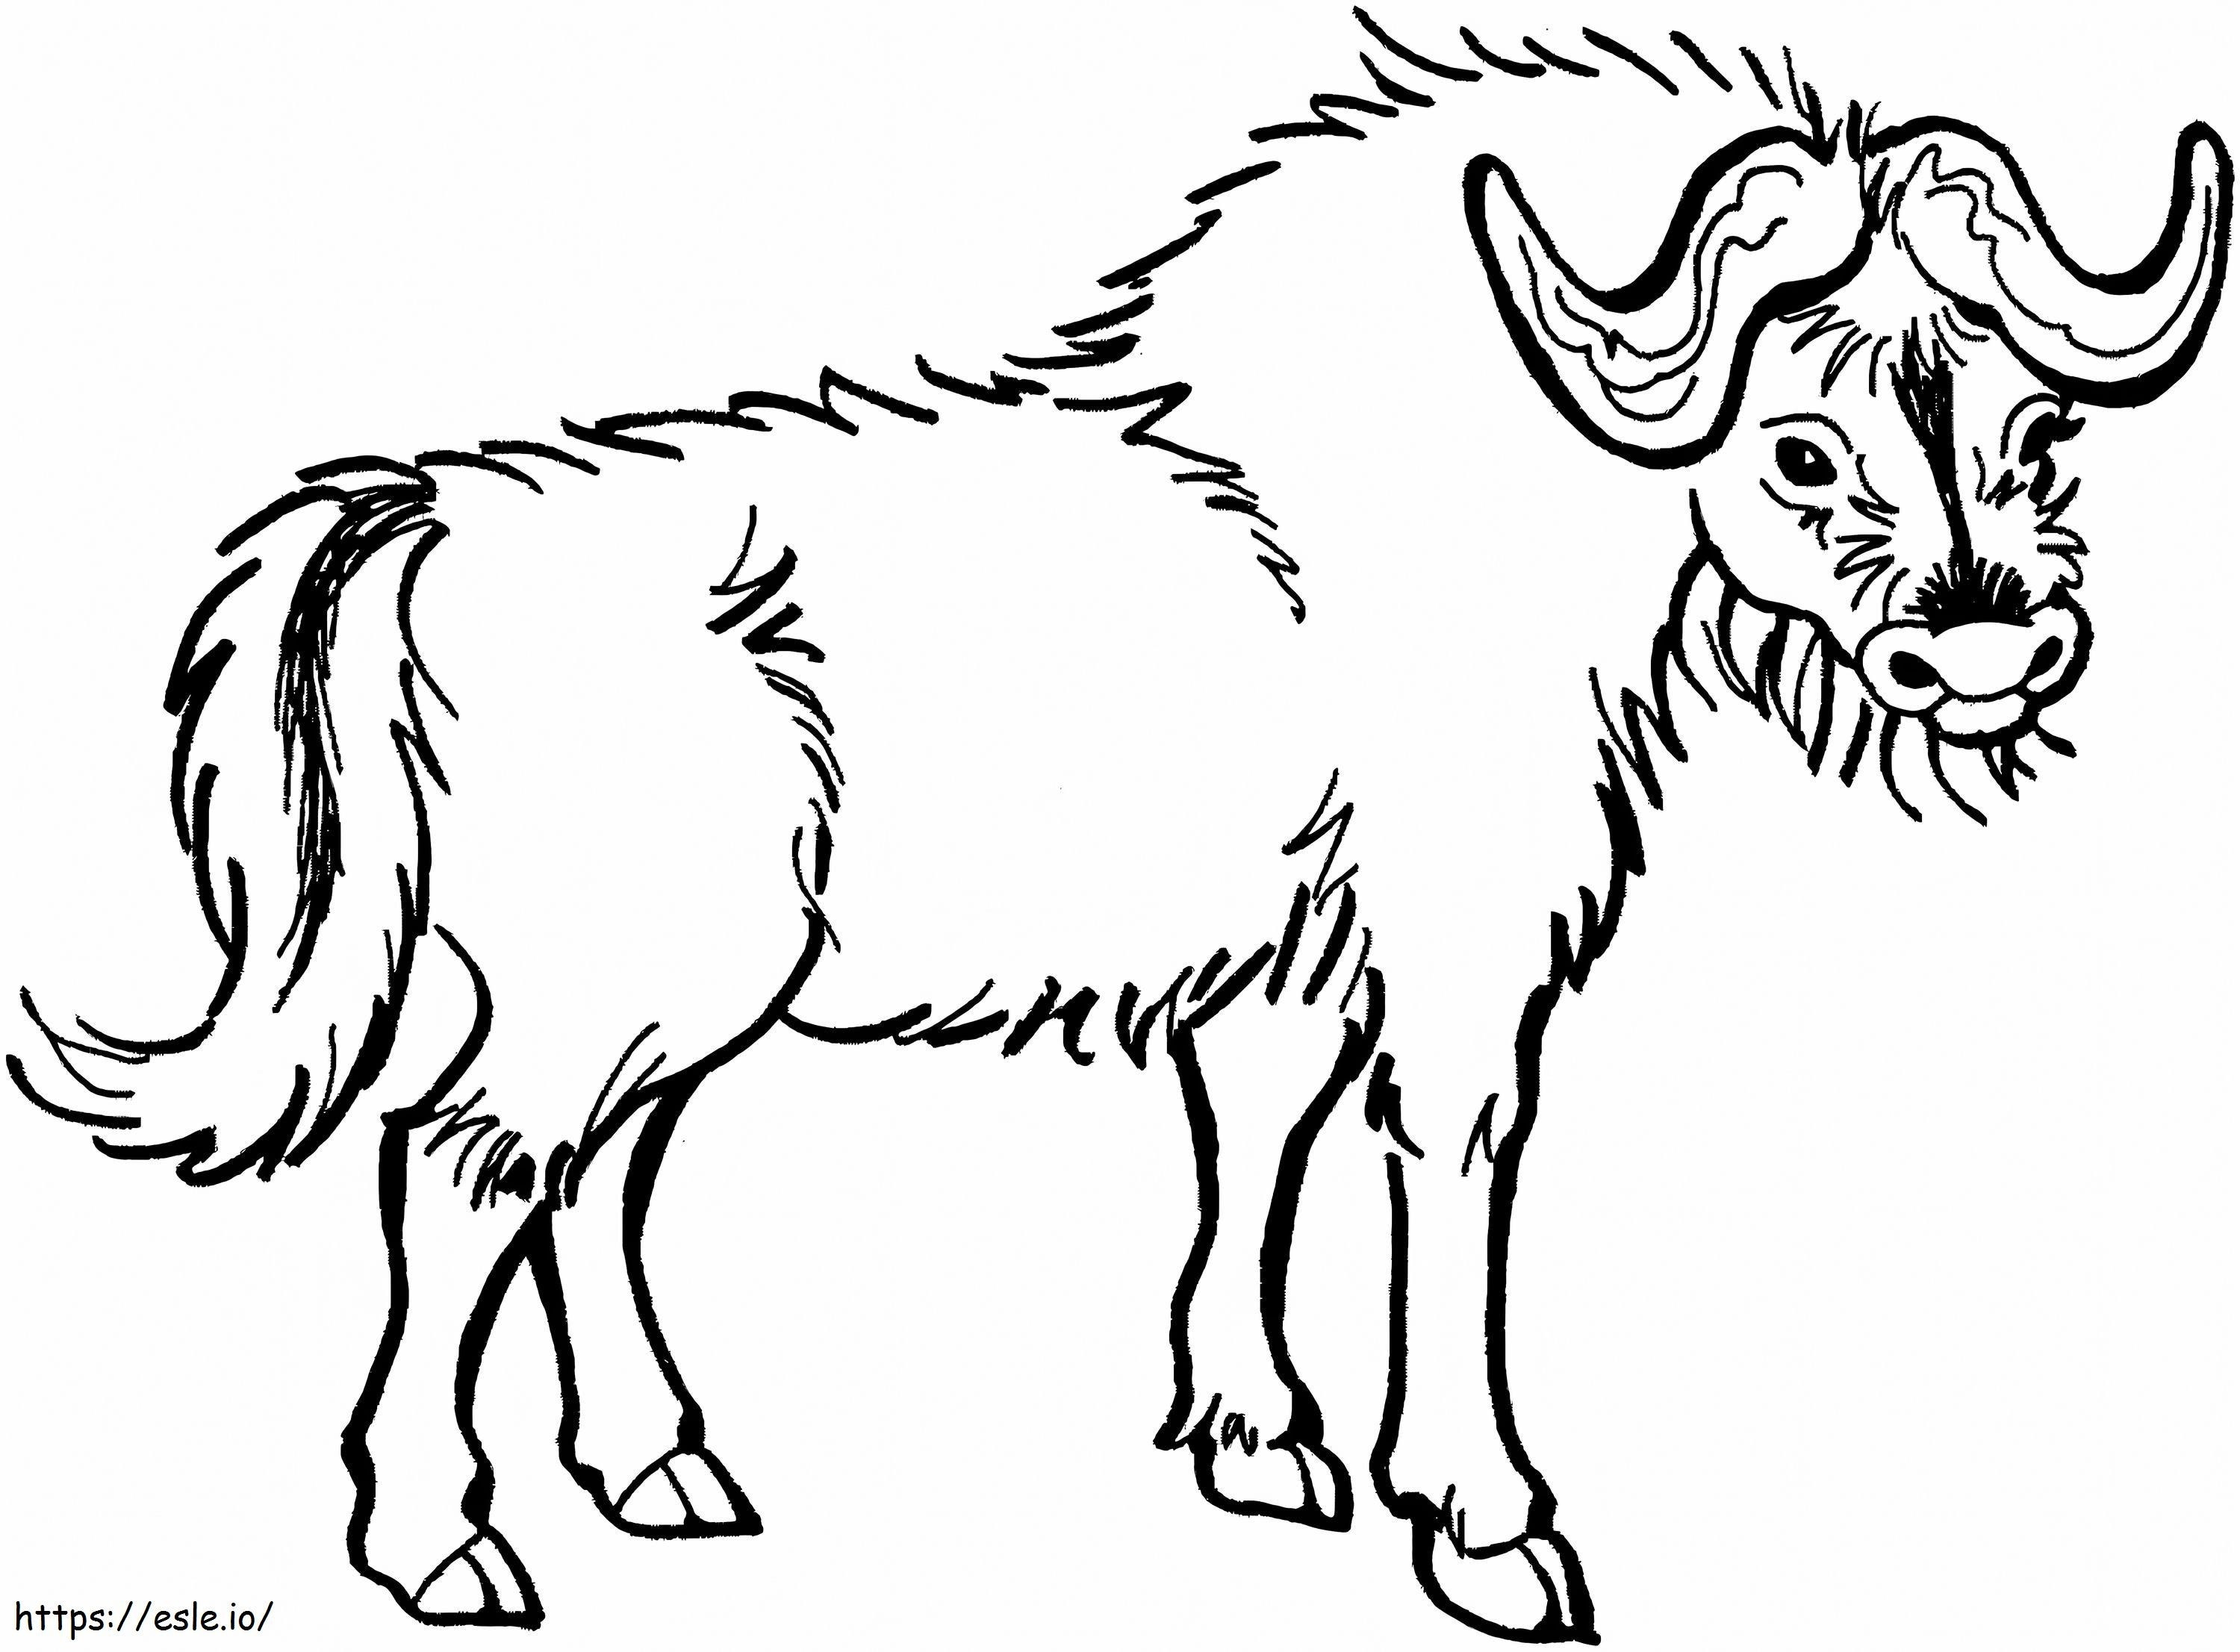 Desenho de mão de búfalo para colorir